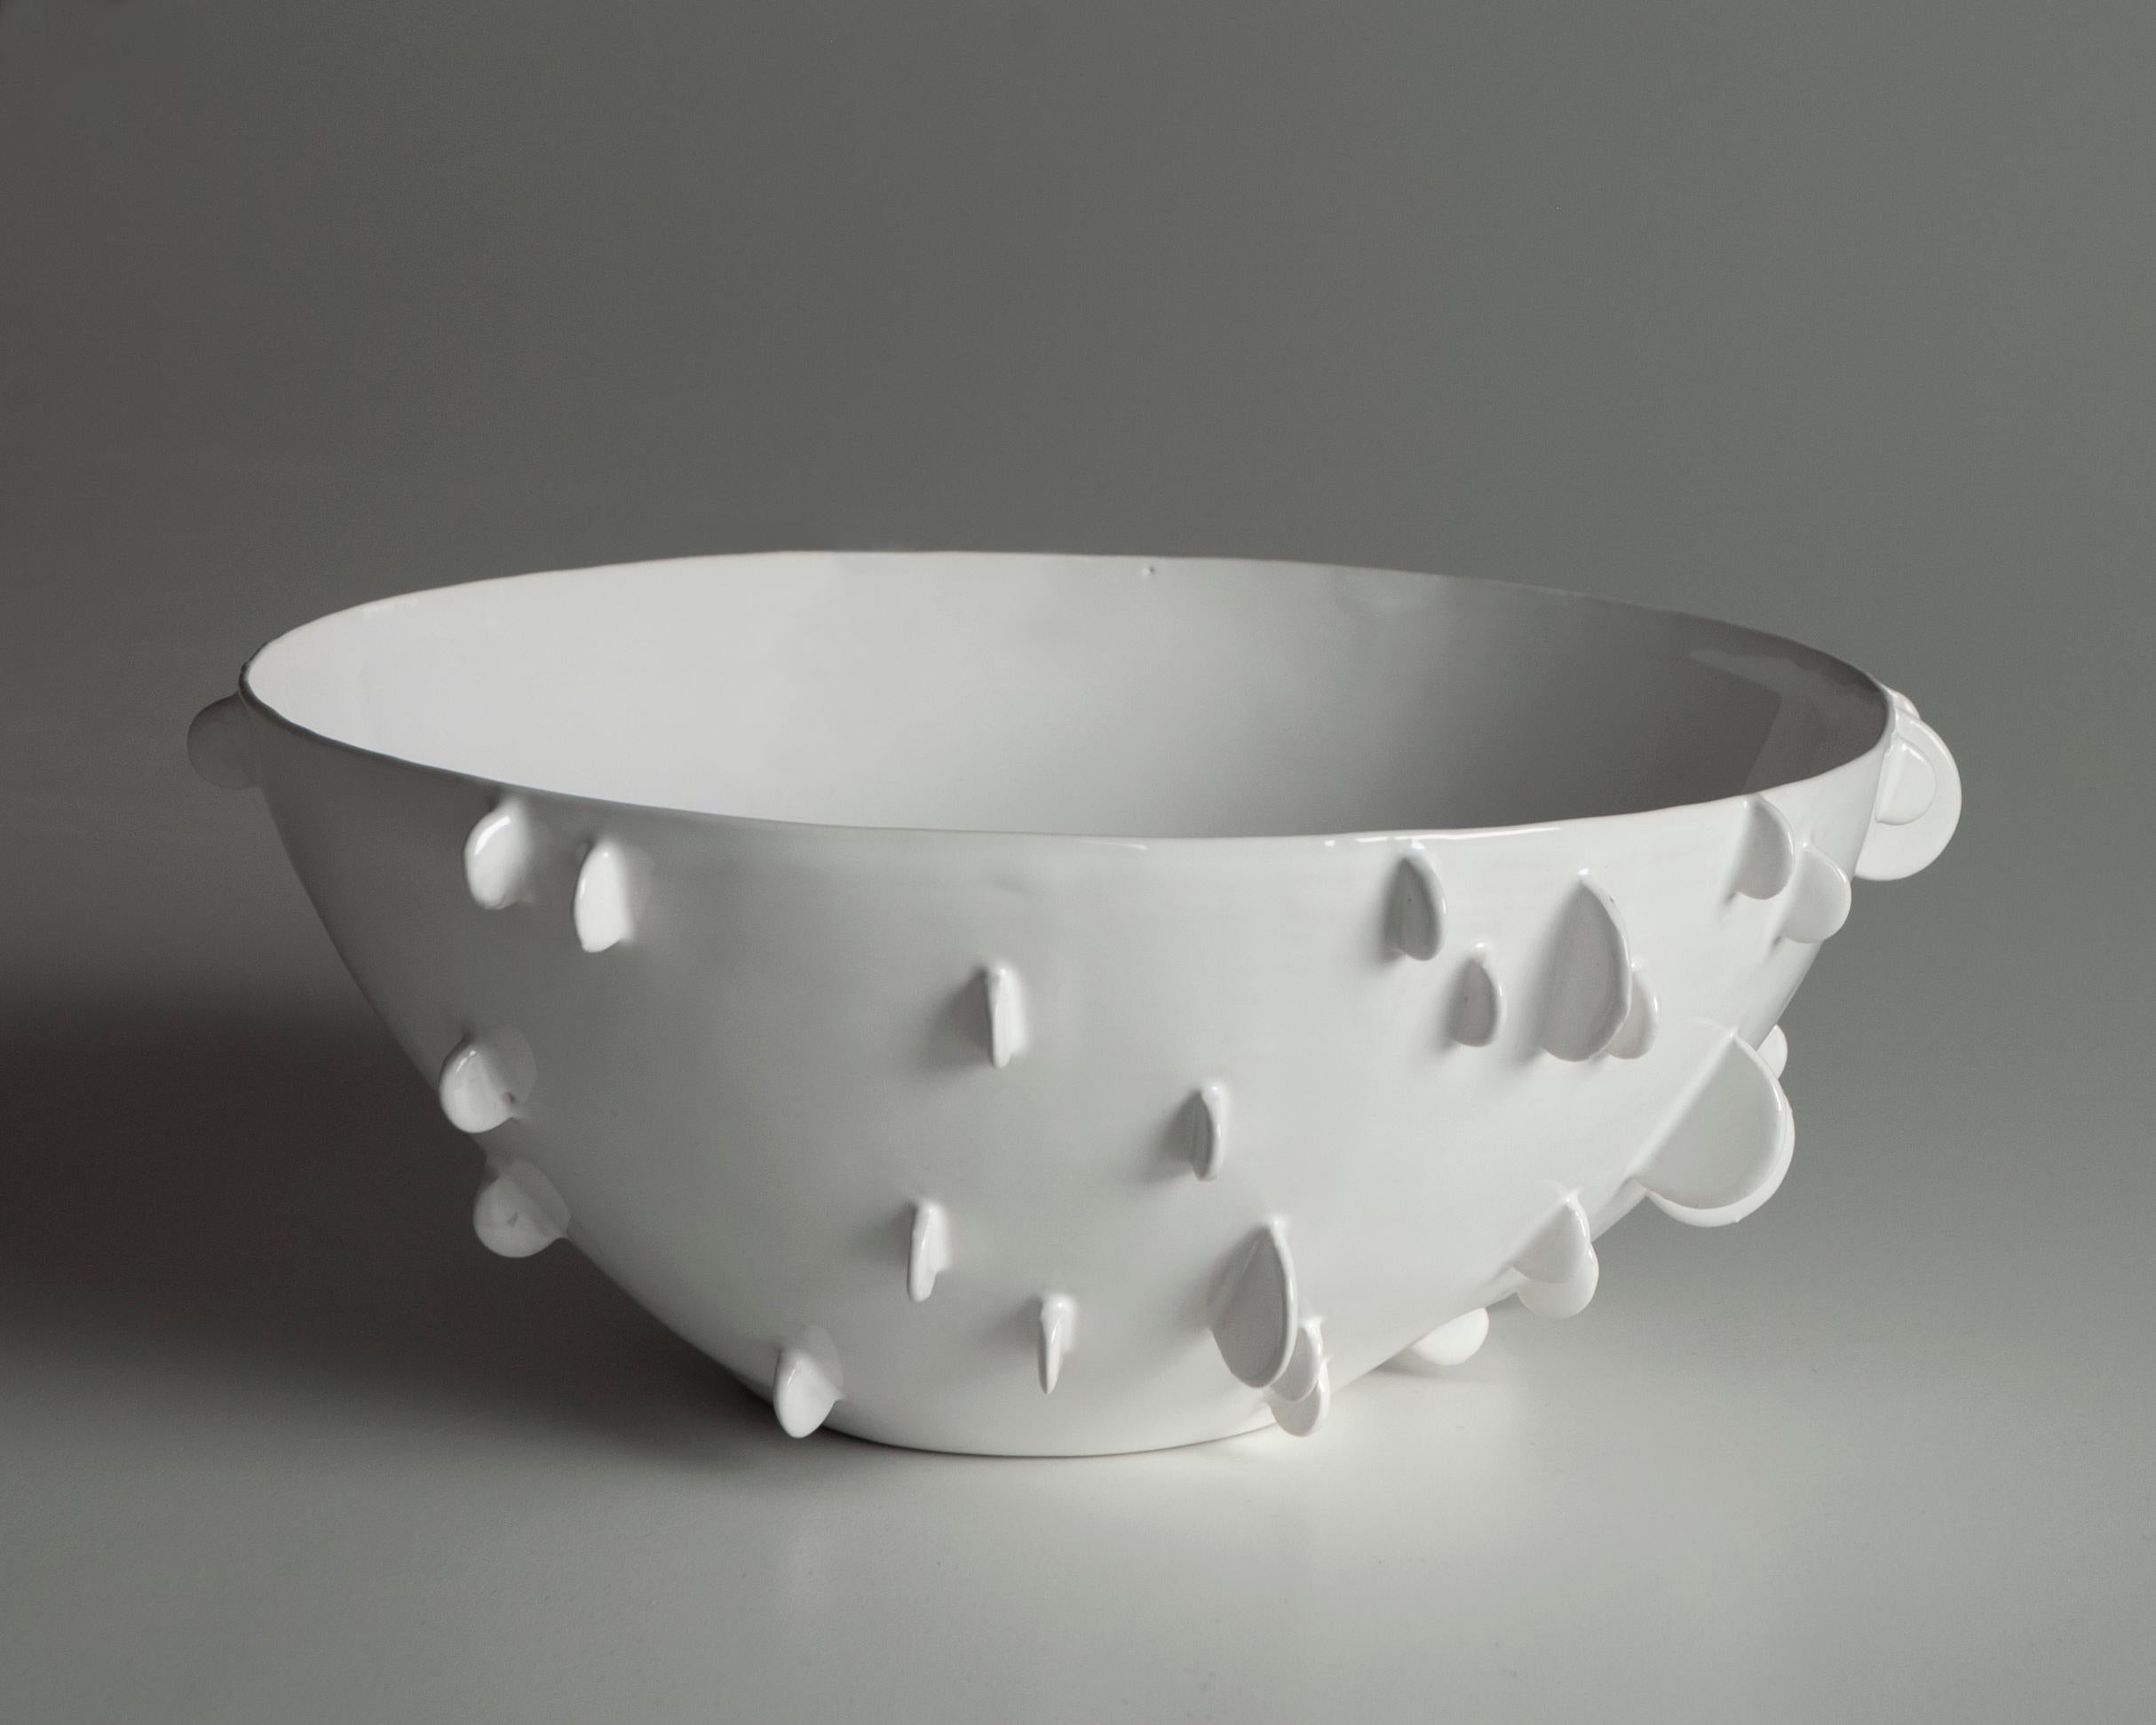 La ciotola in ceramica bianca presenta un delicato motivo a rilievo che evoca l'effetto dei petali. La smaltatura, applicata con tecnica a immersione, conferisce un carattere unico alla superficie, evidenziando le sottili imperfezioni che